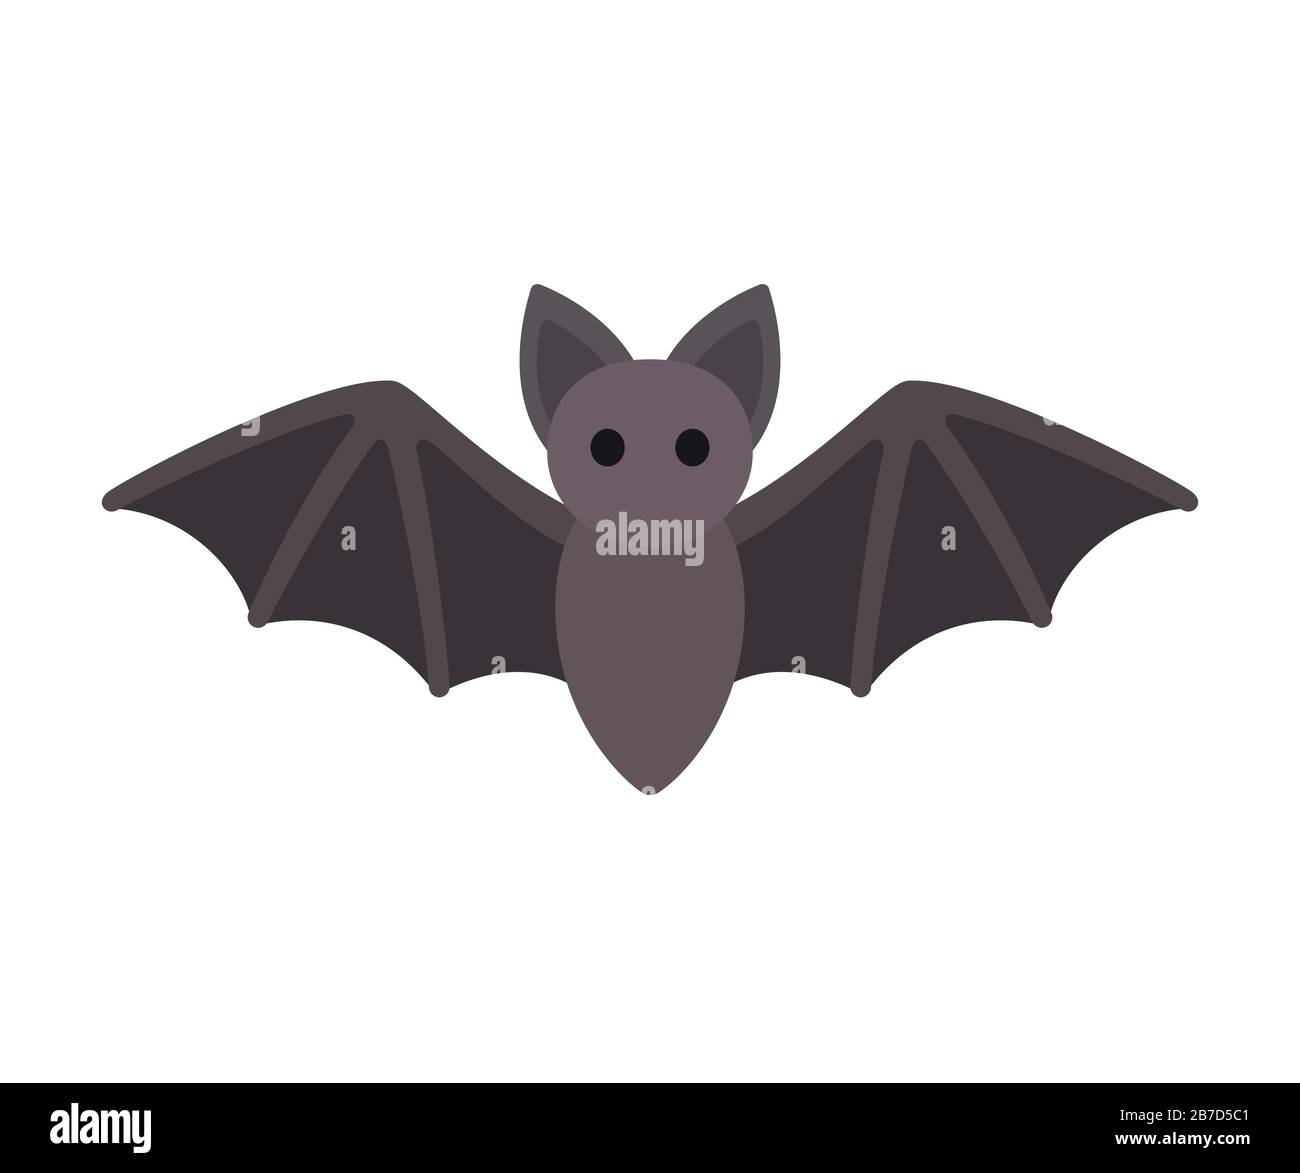 bat clipart images